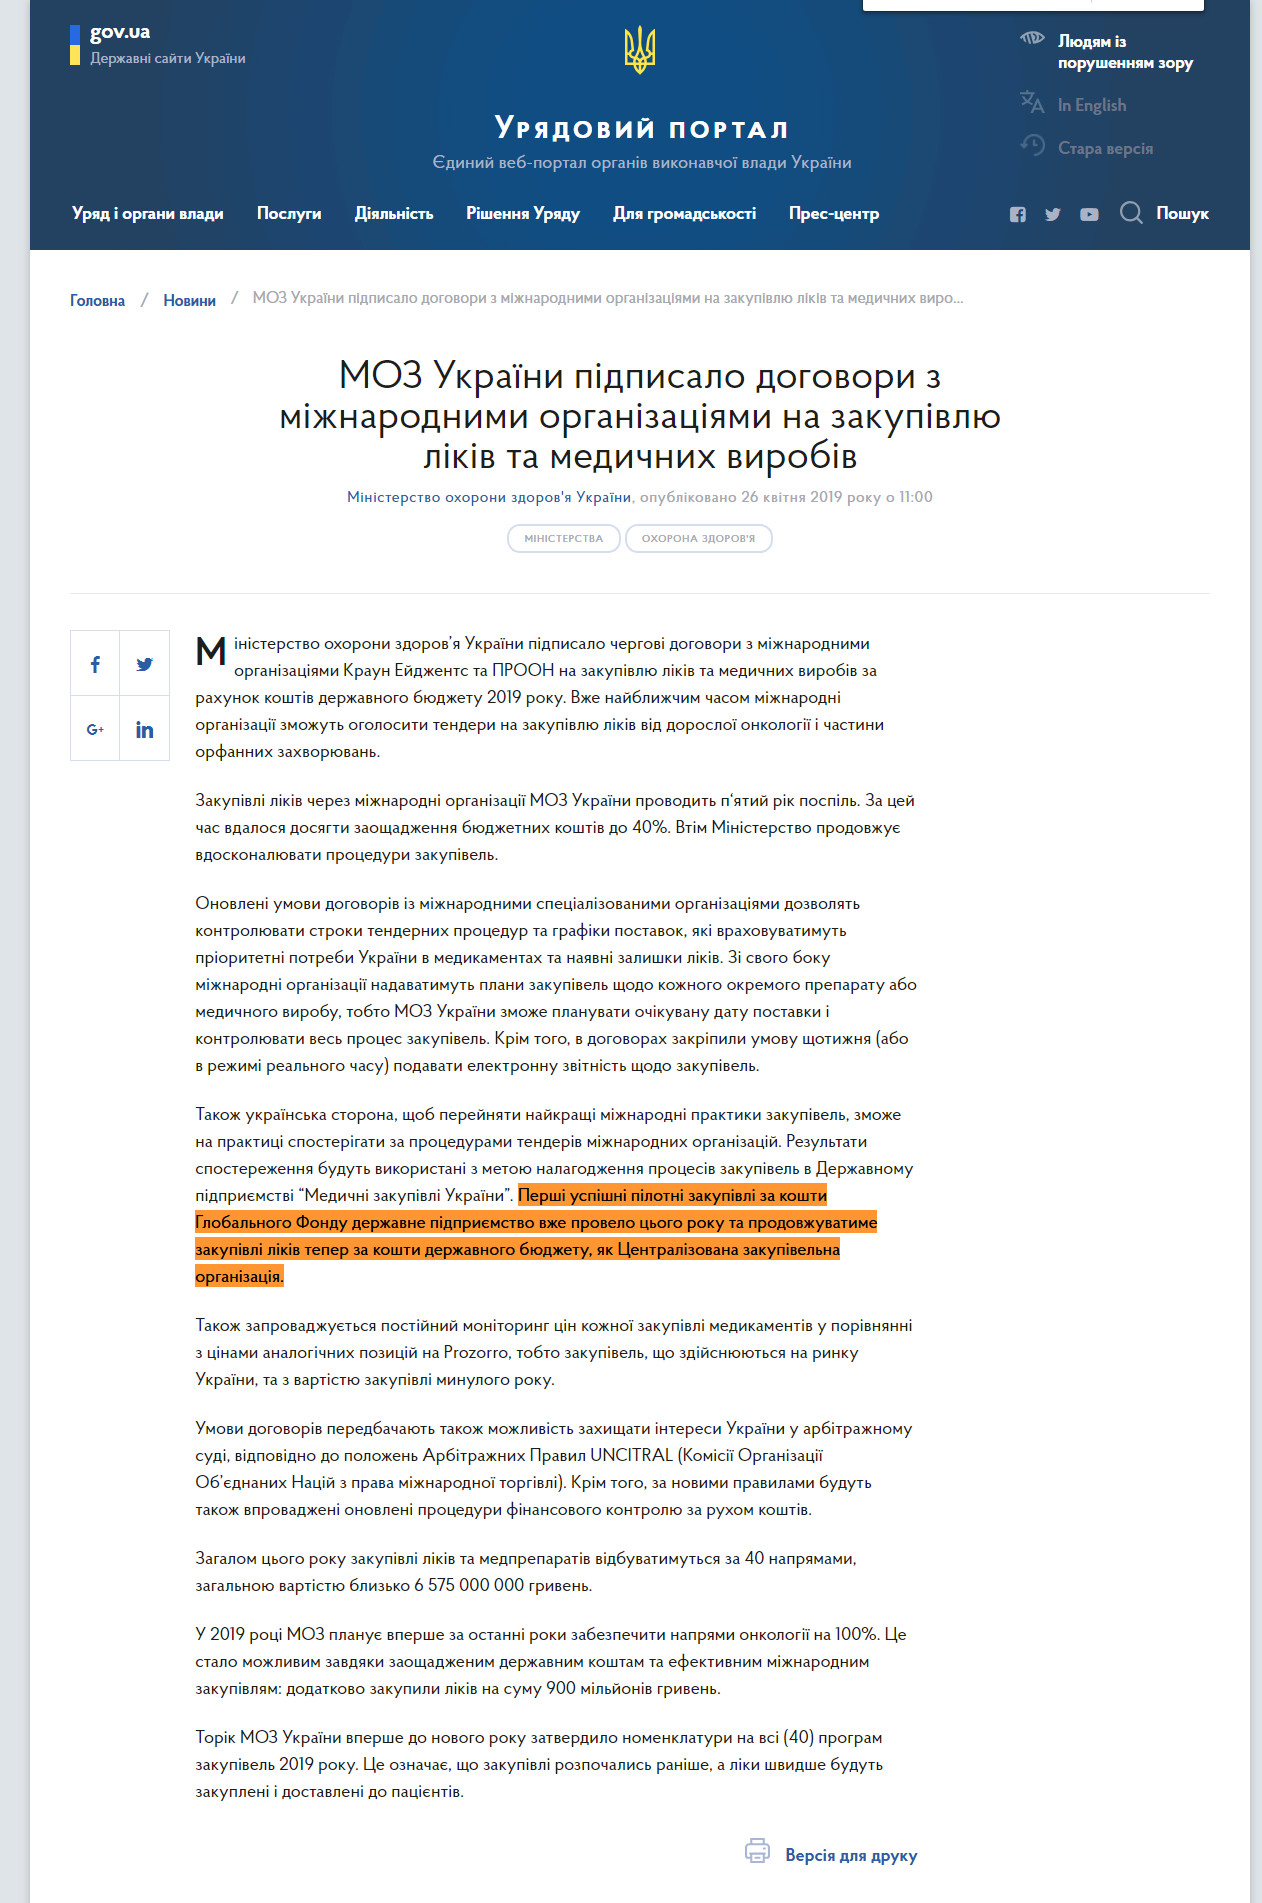 https://www.kmu.gov.ua/ua/news/moz-ukrayini-pidpisalo-dogovori-z-mizhnarodnimi-organizaciyami-na-zakupivlyu-likiv-ta-medichnih-virobiv